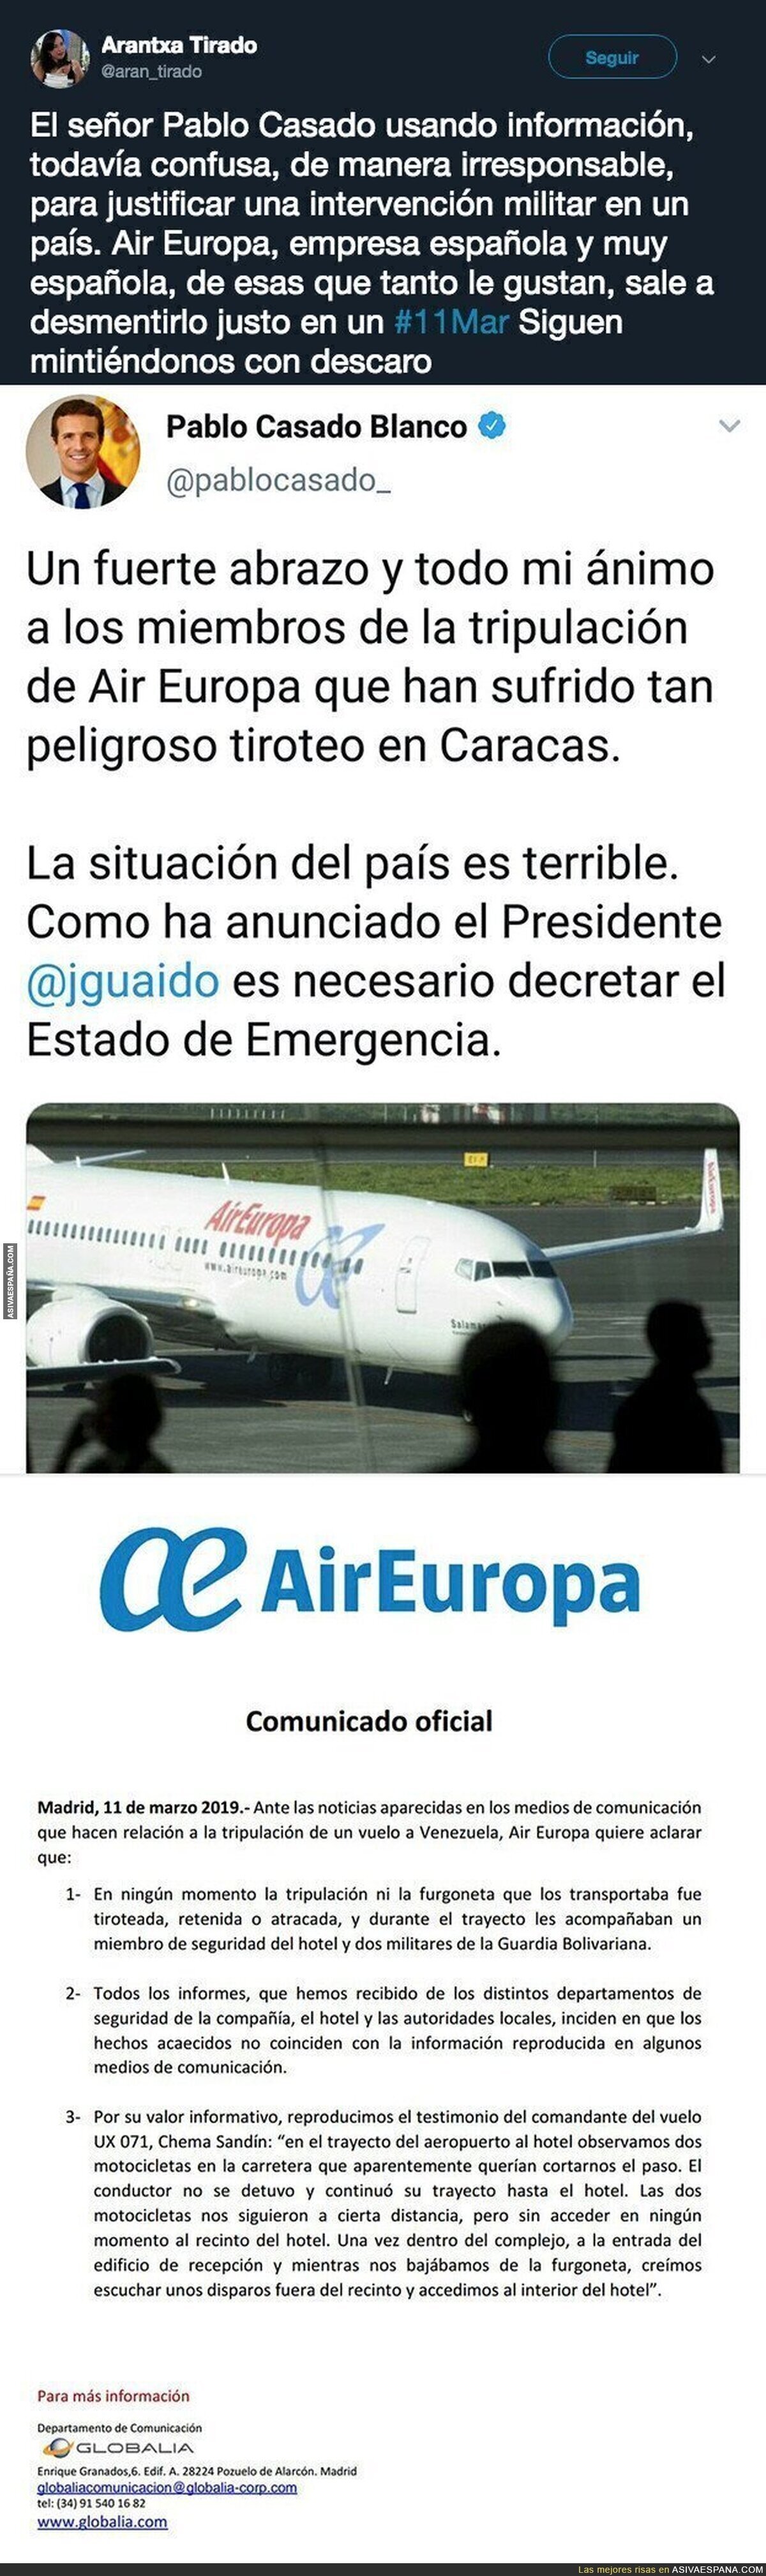 Pablo Casado miente descaradamente sobre Venezuela usando fuentes de Juan Guaidó que ha desmentido la propia Air Europa